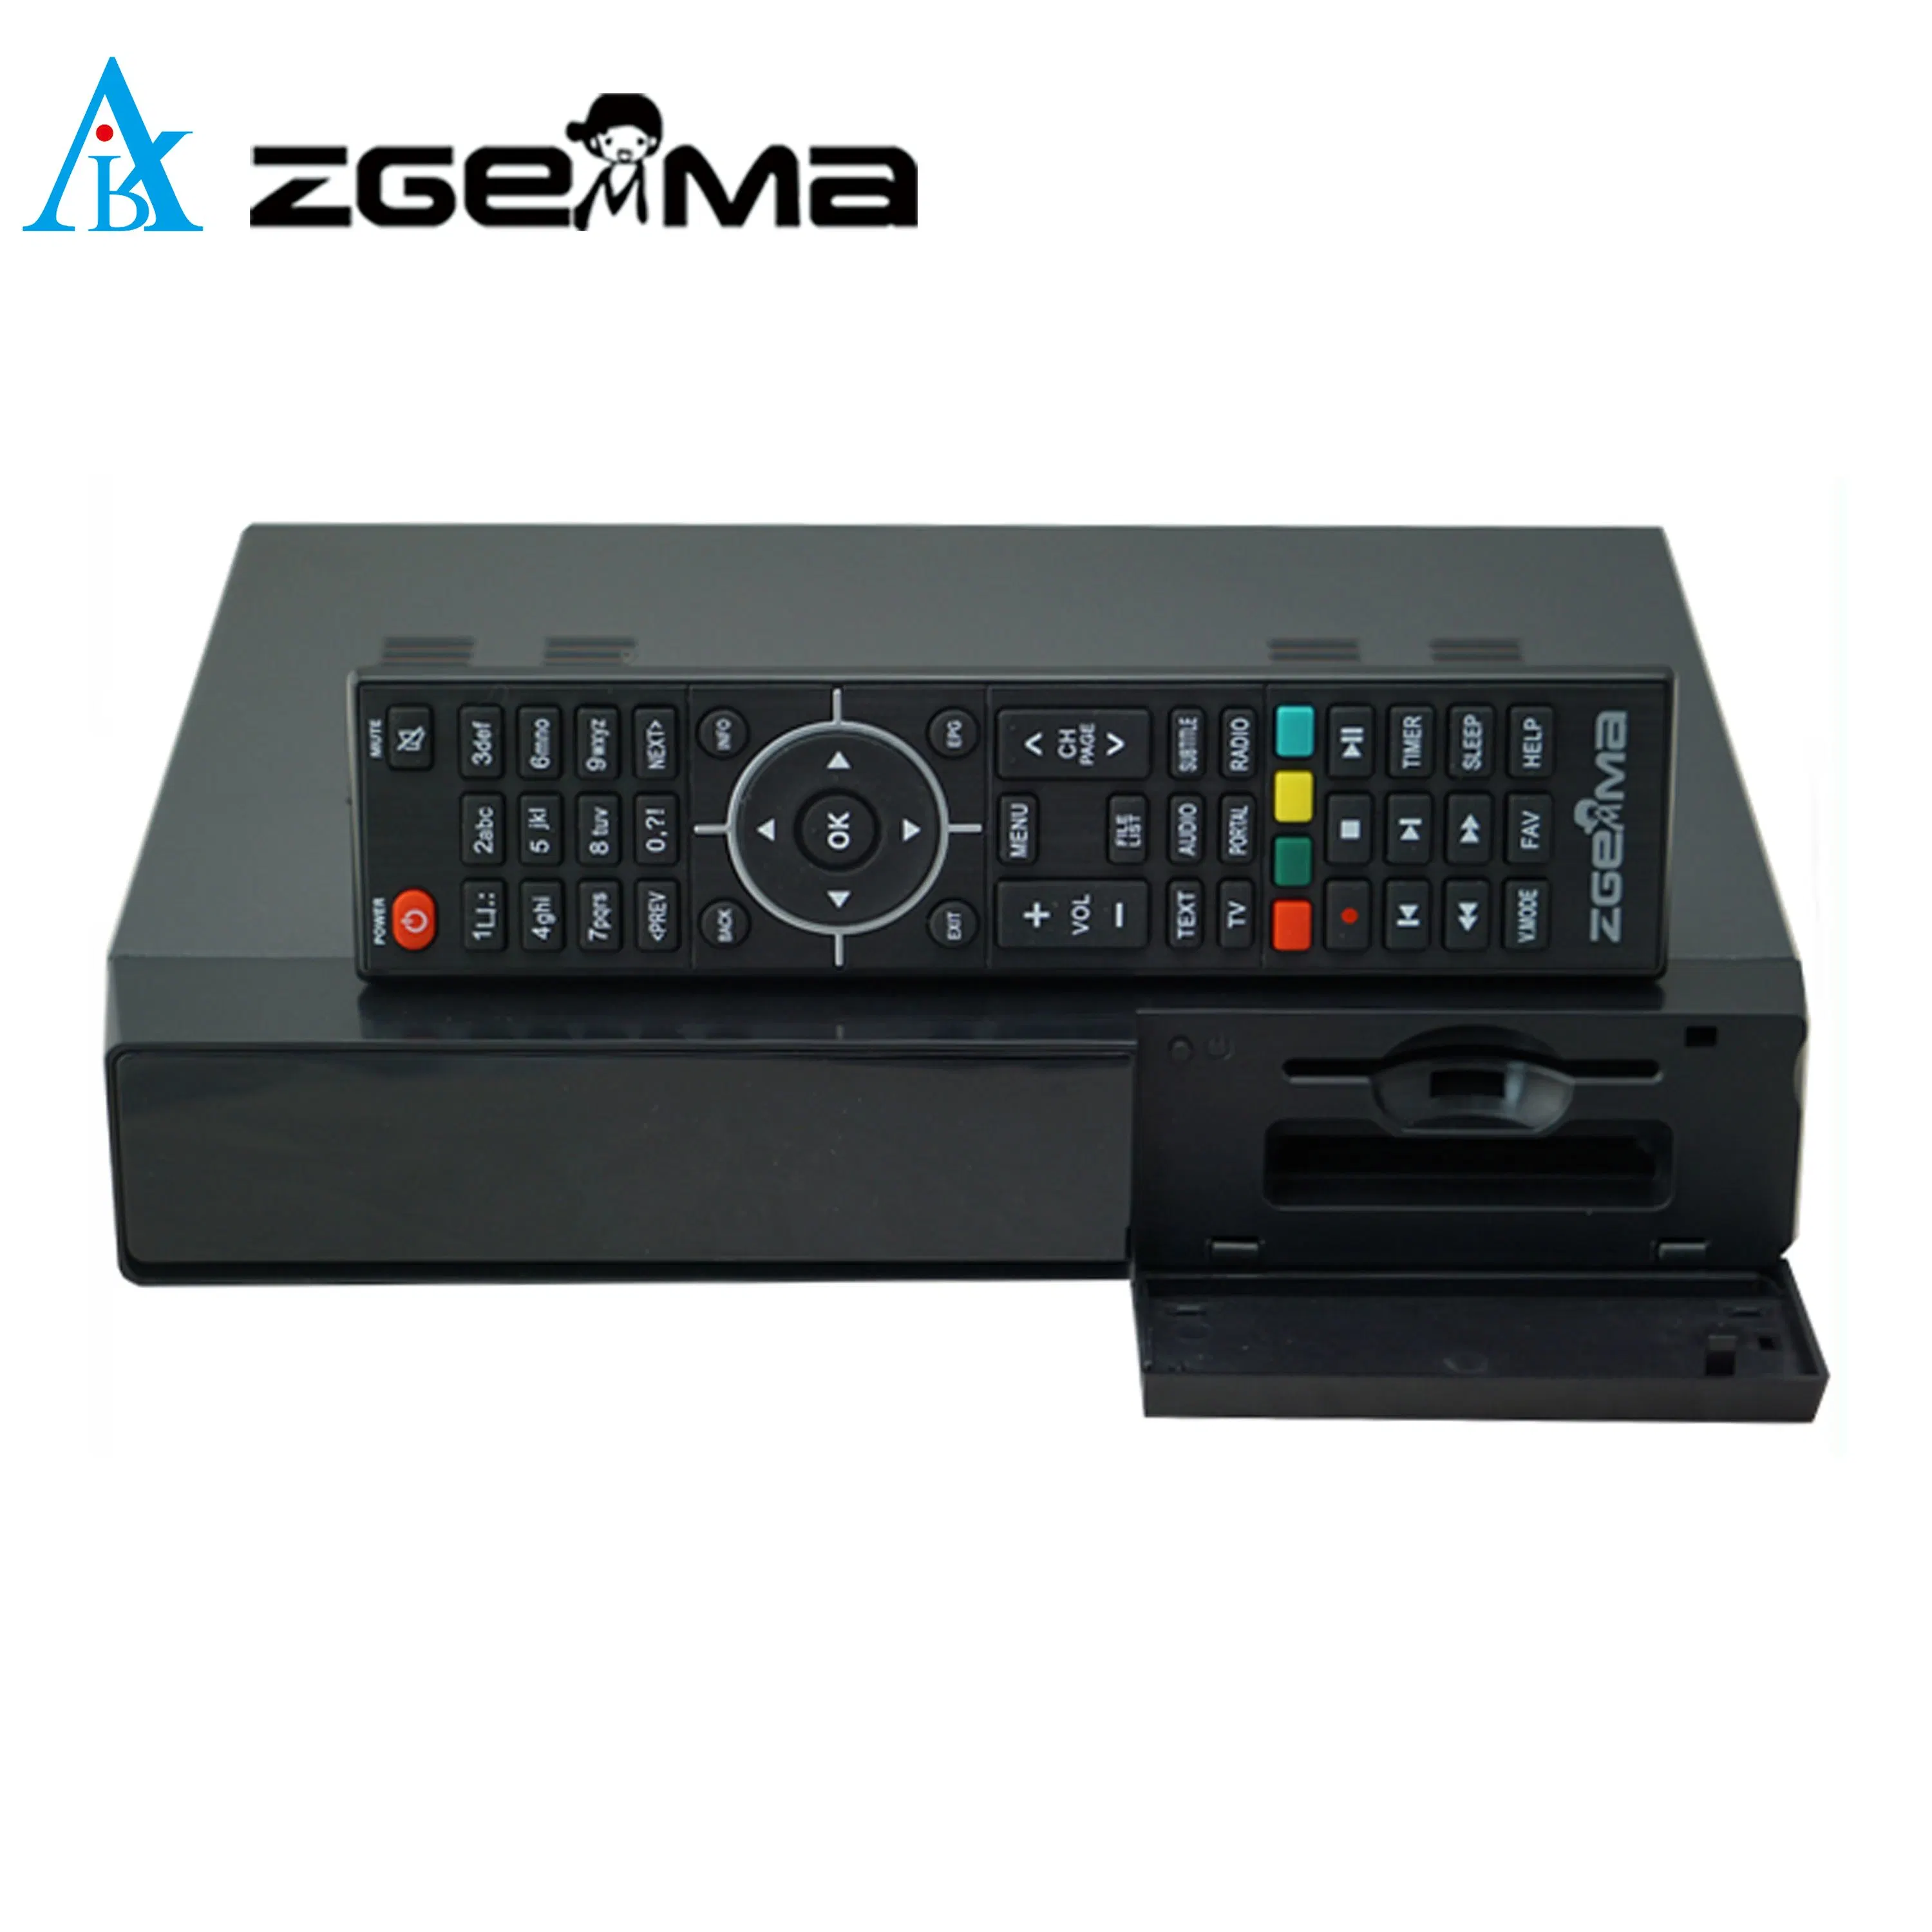 Zgemma H7s del receptor de TV vía satélite - Enigma2 el sistema operativo Linux, 2*DVB-S2/S2X + DVB-T2/C sintonizador híbrido de decodificador de TV